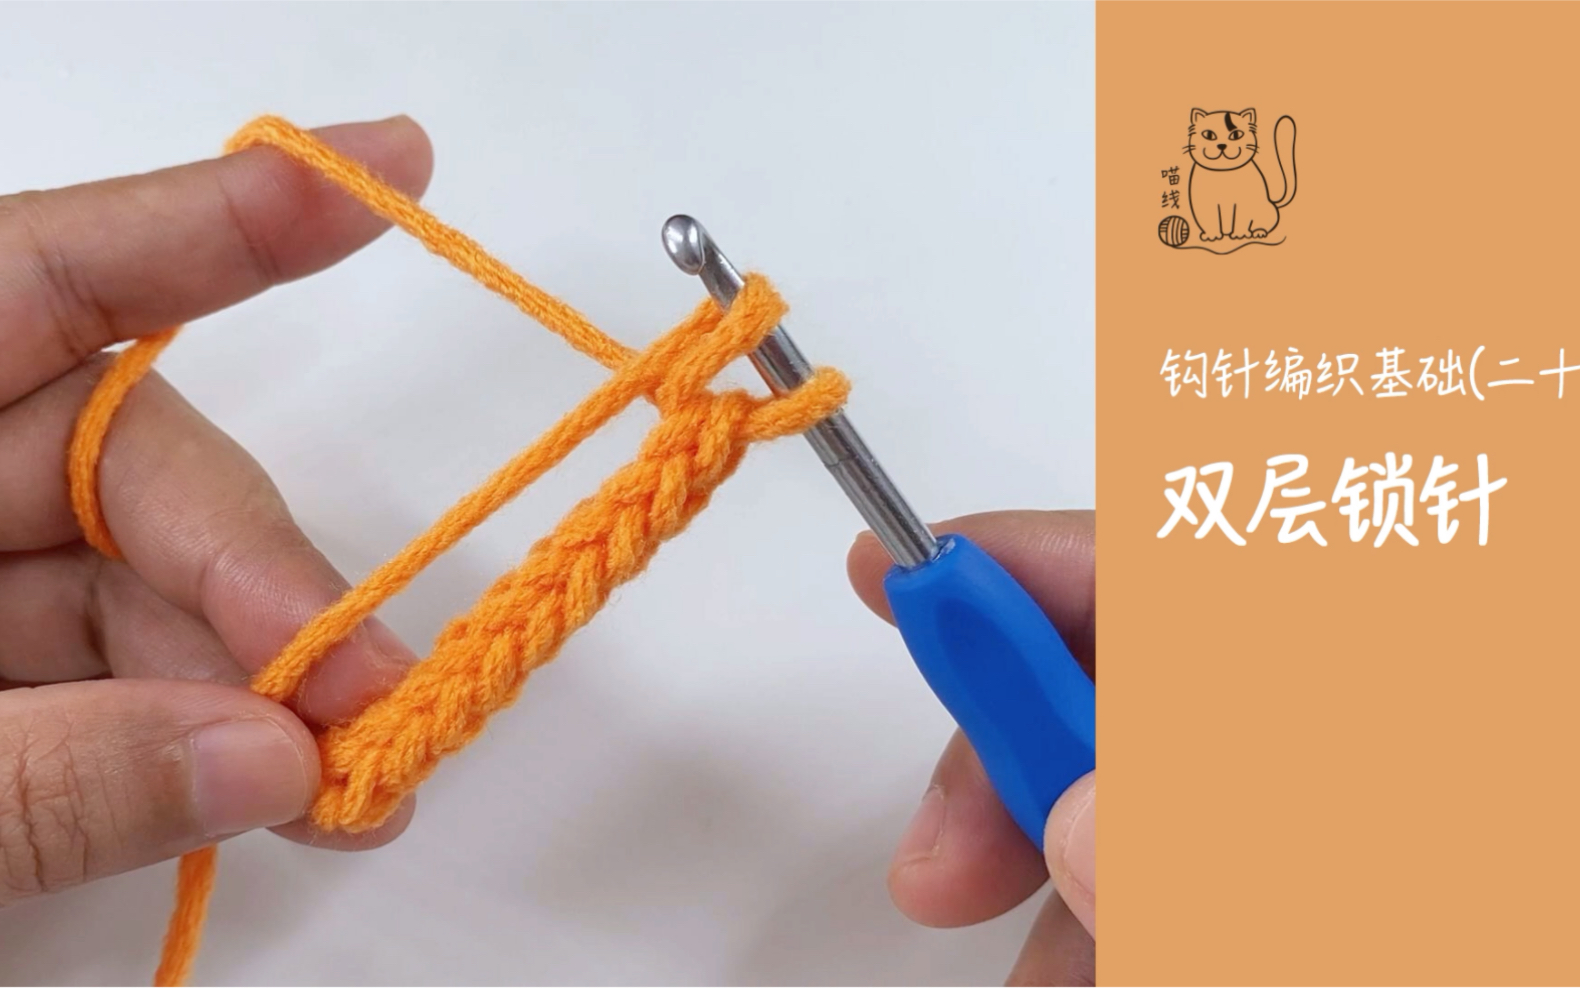 钩针编织入门(二十), 双层锁针的钩织方法，比钩里山简单